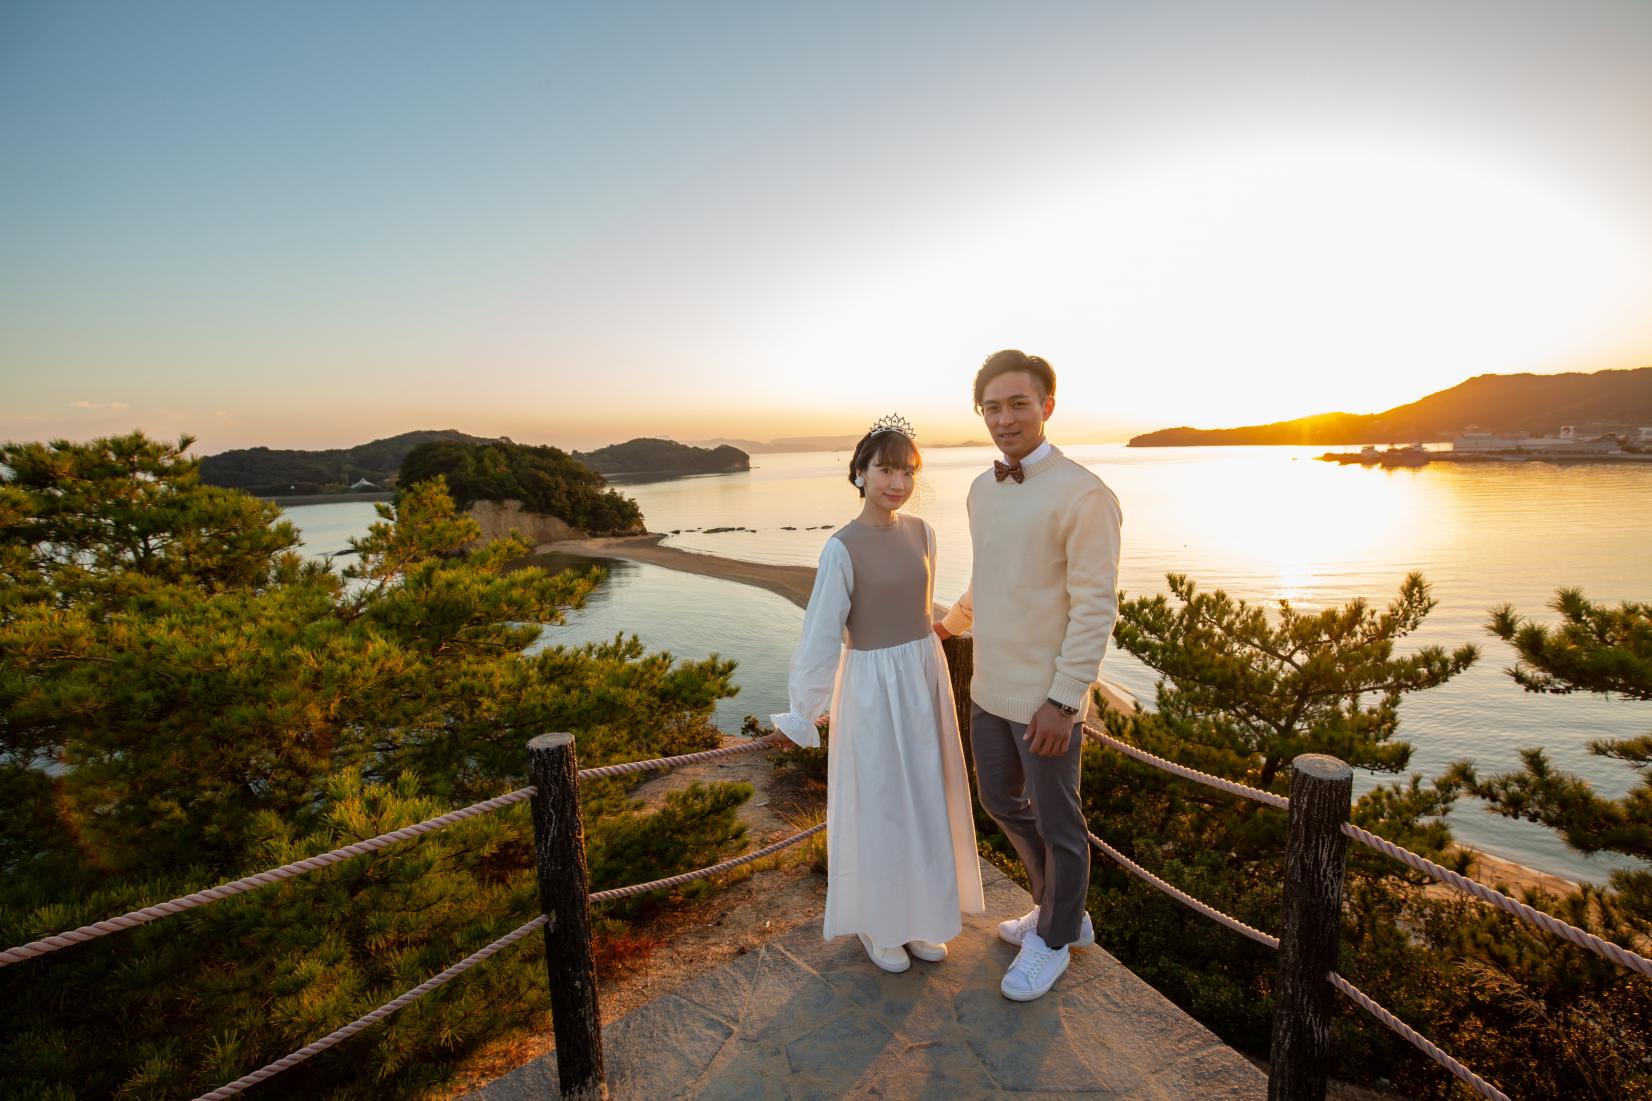 【香川縣婚紗照之旅】陶醉於拍攝婚紗照的聖地小豆島及大自然美景的兩天旅程-1